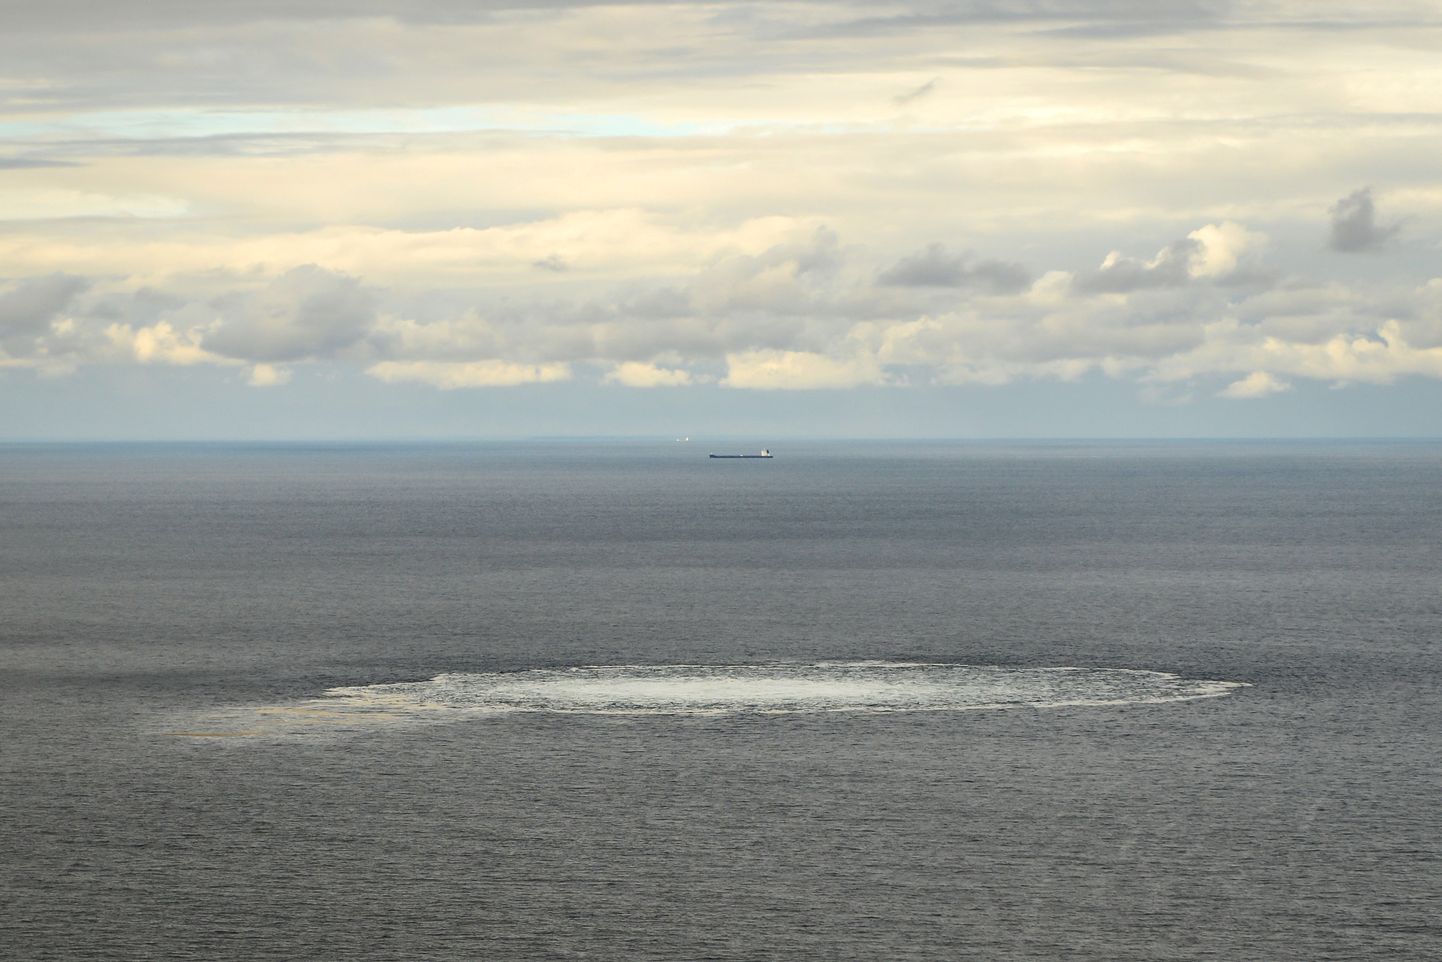 Nord Streami torujuhtme lekkest tekkinud gaasimullid Bornholmi saare lähedal.